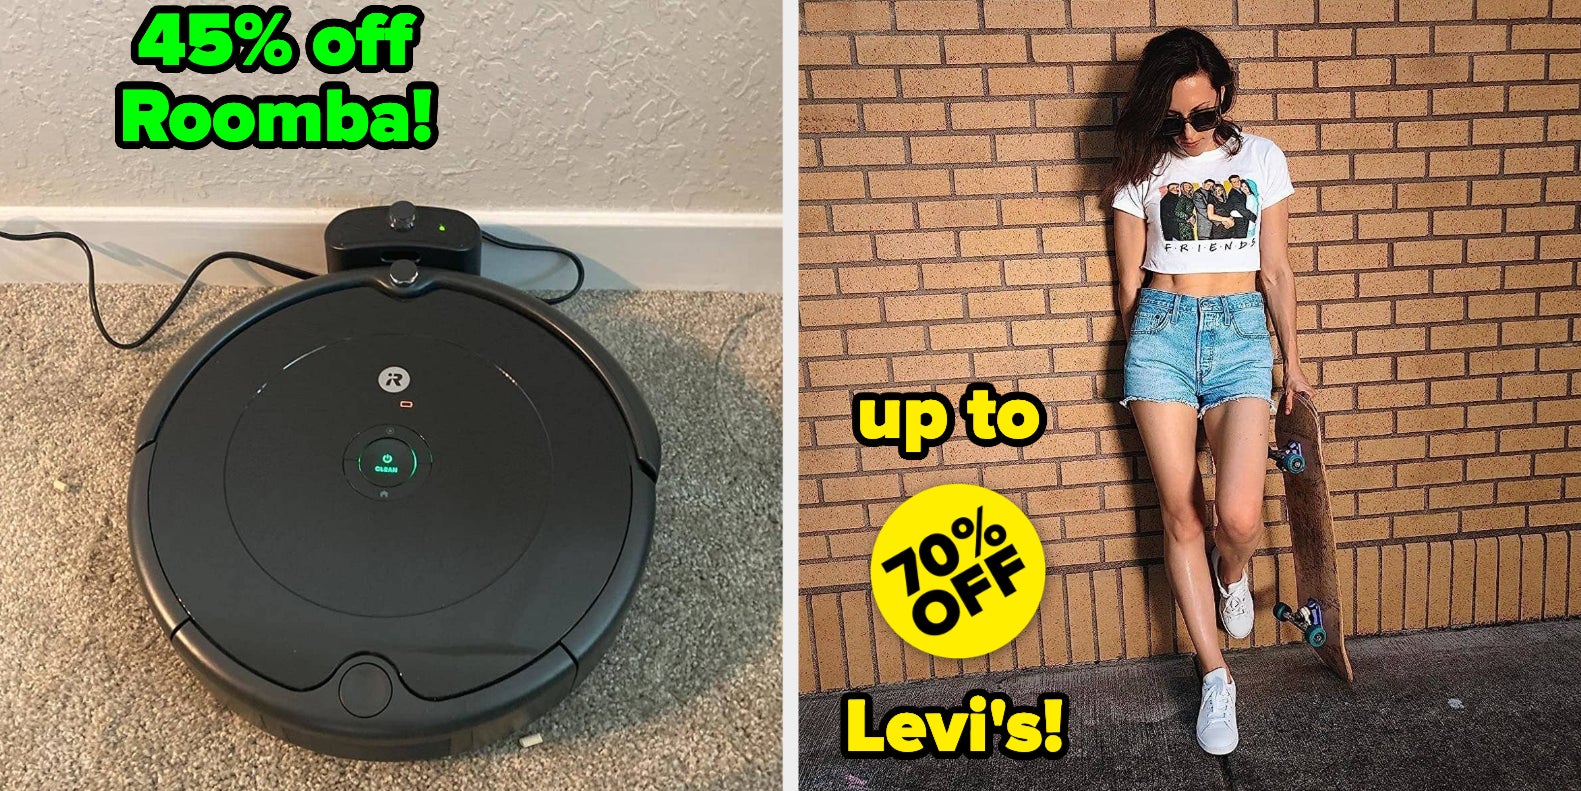 Best Prime Day 2023 deal: 45% off iRobot Roomba 692 robot vacuum